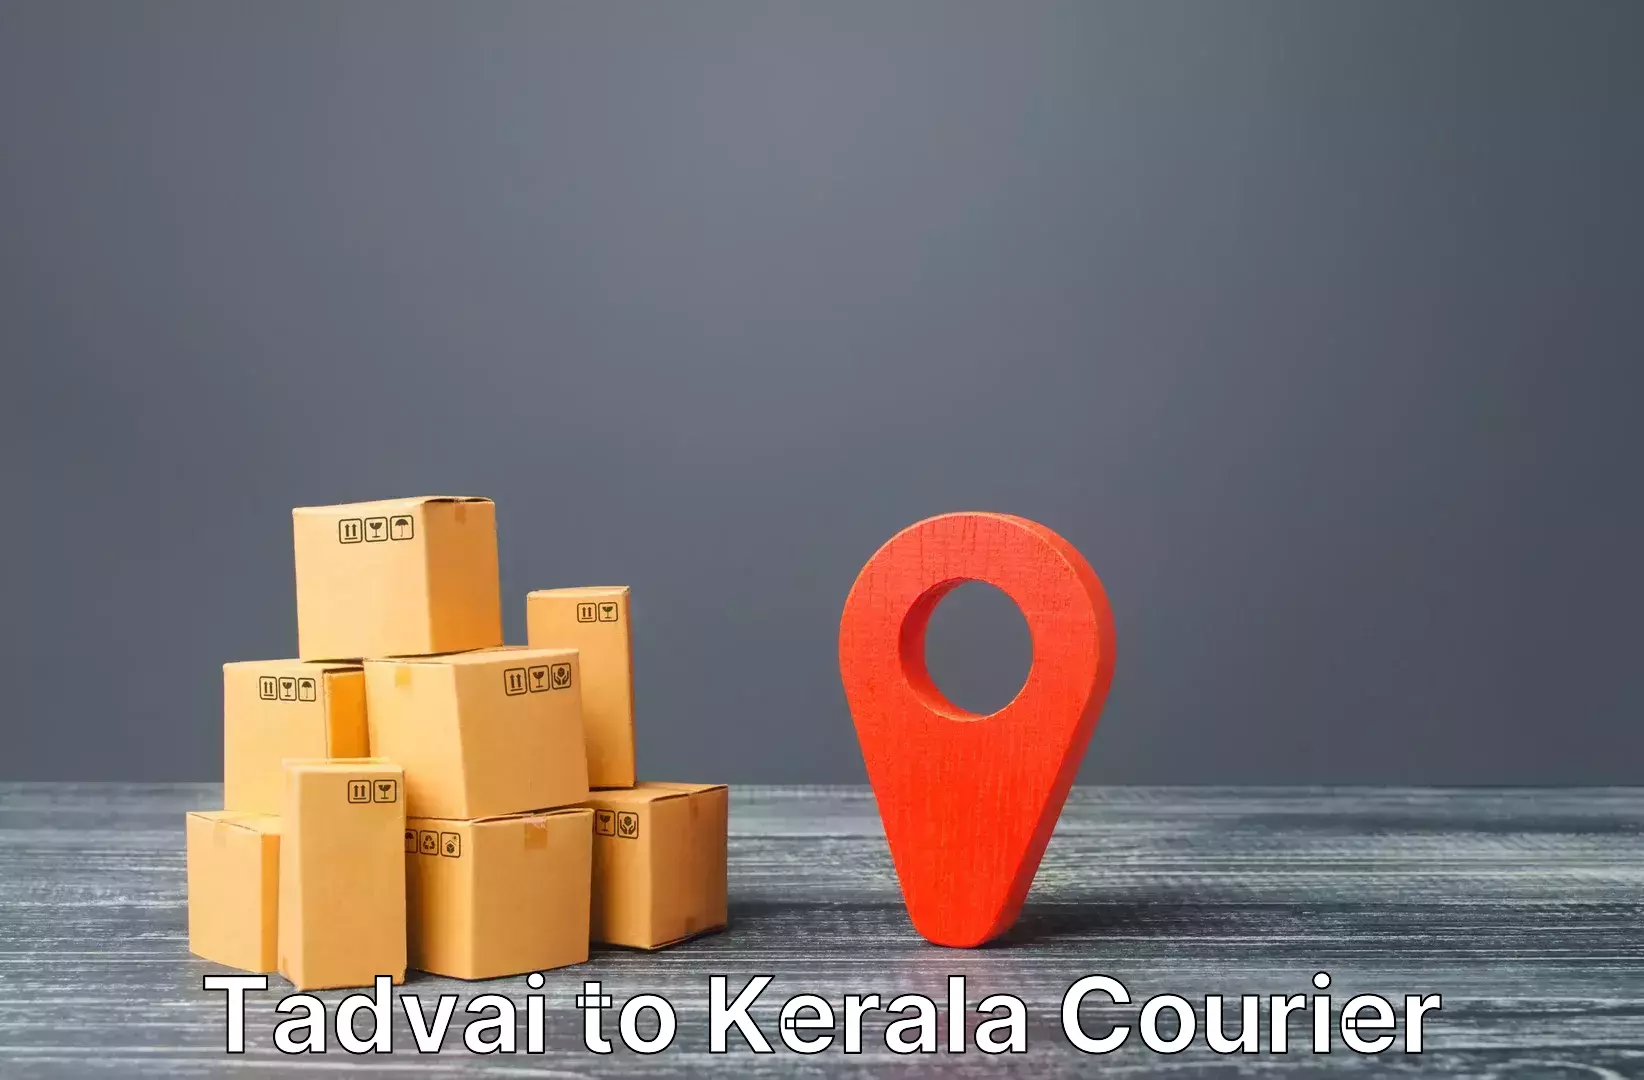 Urgent luggage shipment Tadvai to Pala